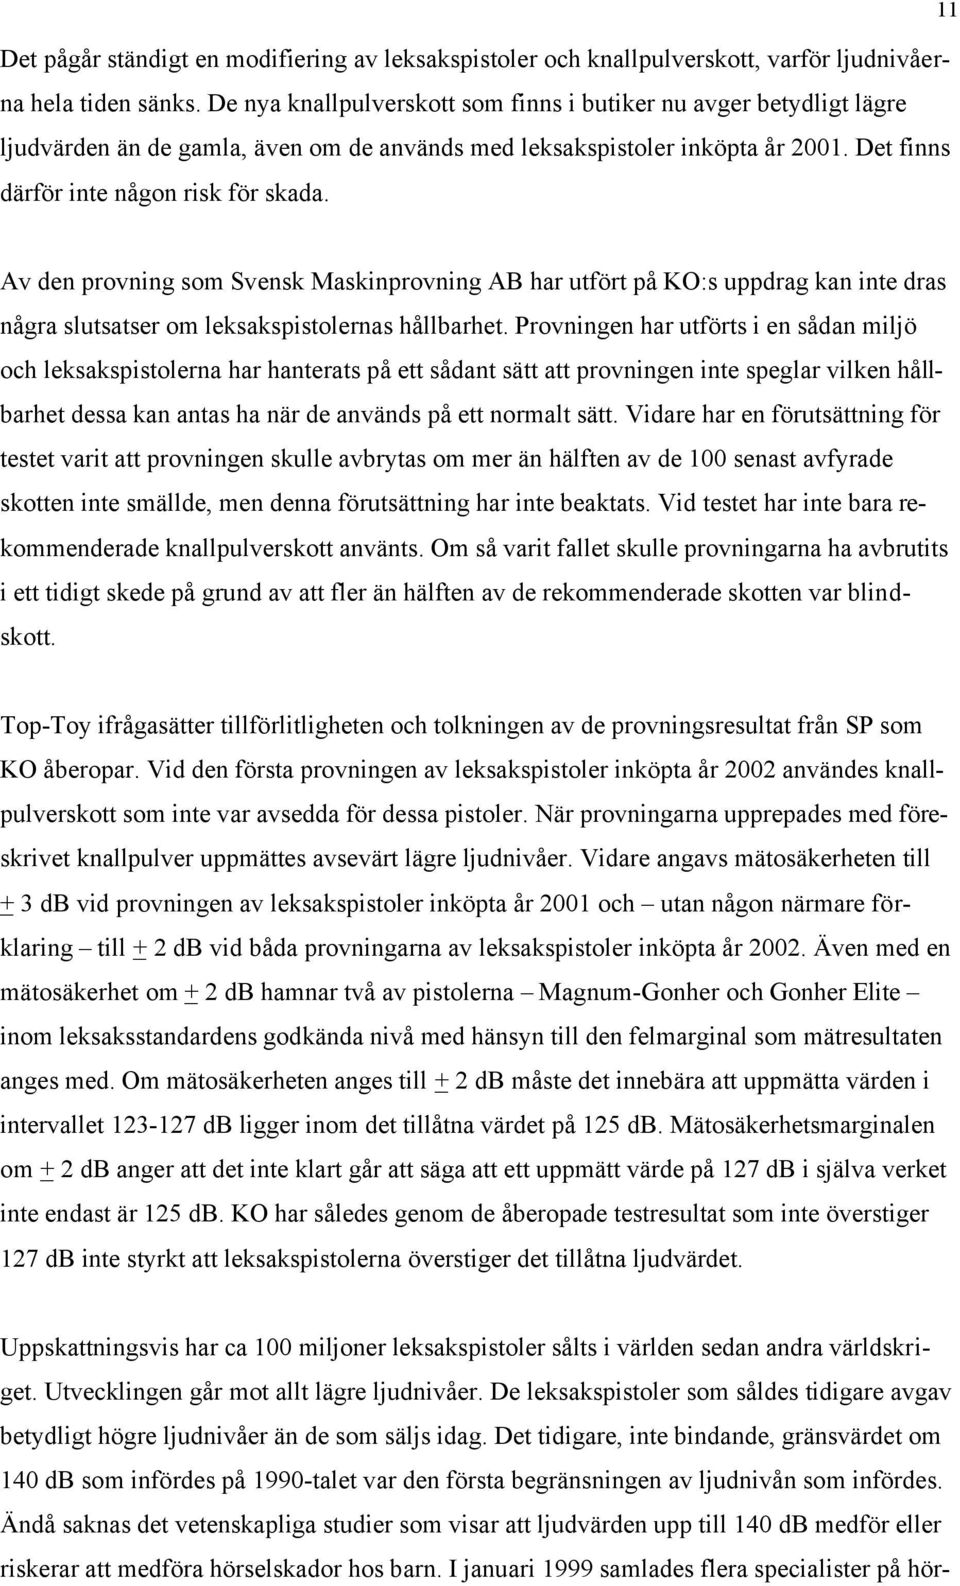 Av den provning som Svensk Maskinprovning AB har utfört på KO:s uppdrag kan inte dras några slutsatser om leksakspistolernas hållbarhet.